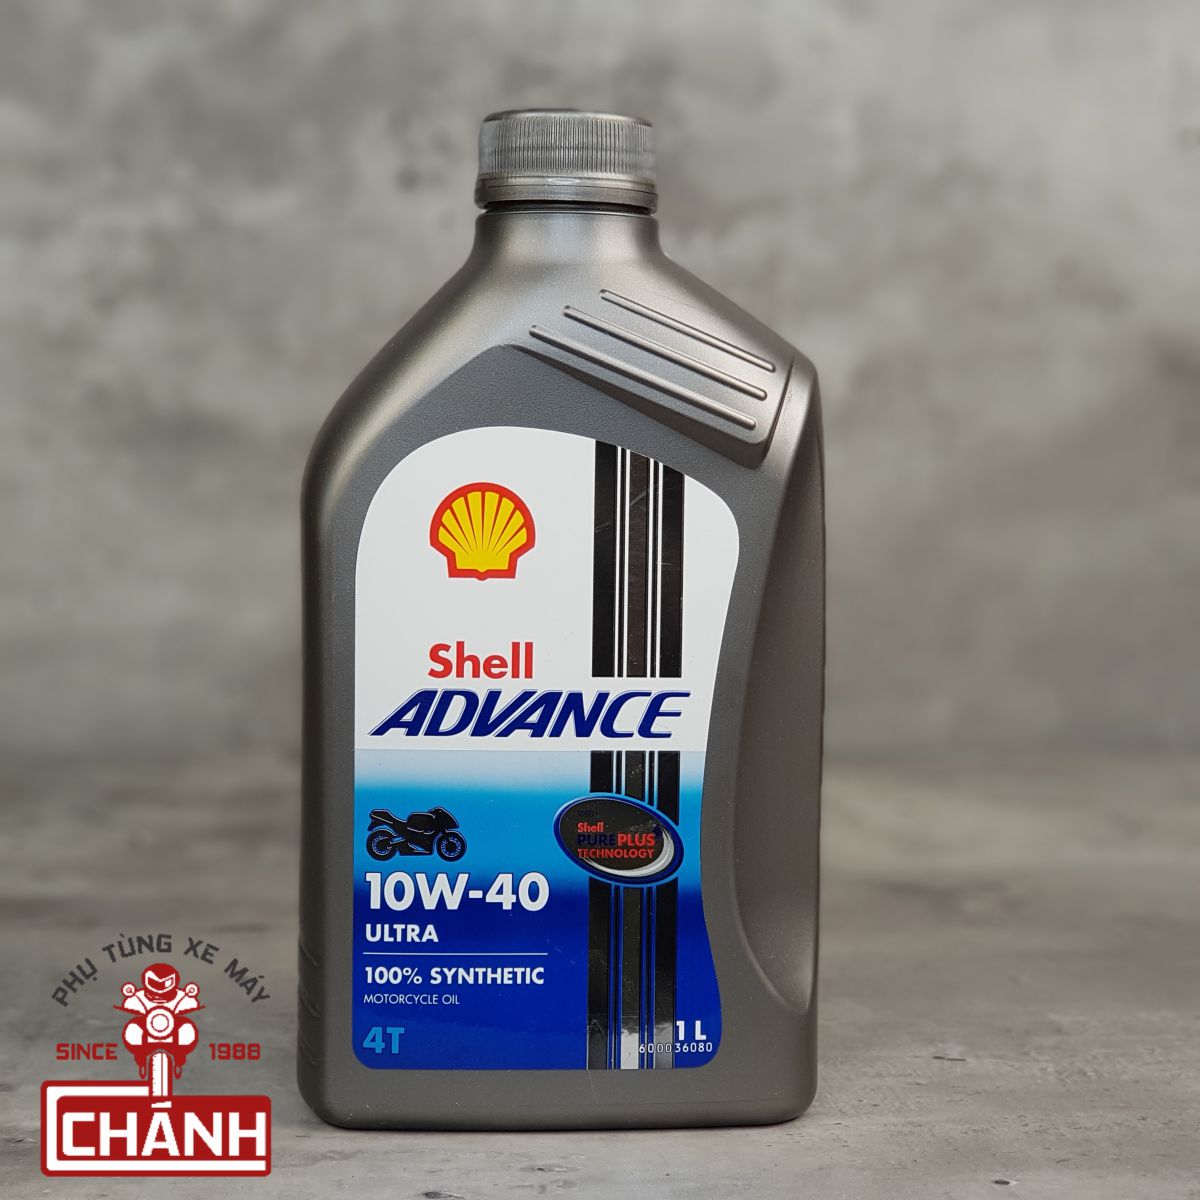 Shell-Advance-Ultra-10W40-1L-Phu-tung-xe-may-Chanh-quan-10-ho-chi-minh-2